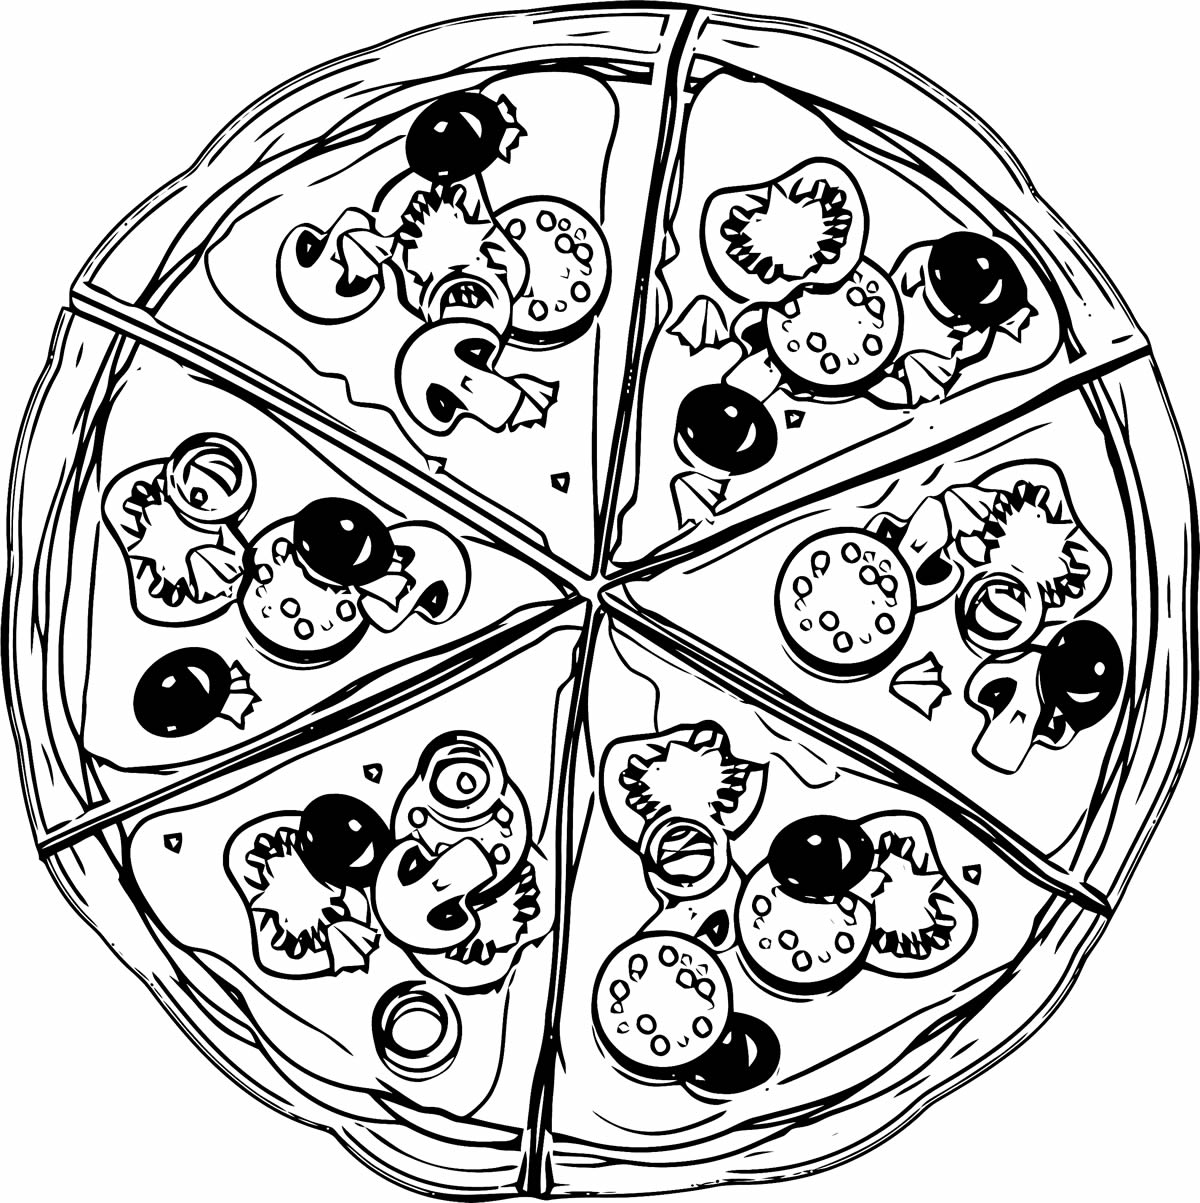 Desenhos de Pizza - Como desenhar Pizza passo a passo